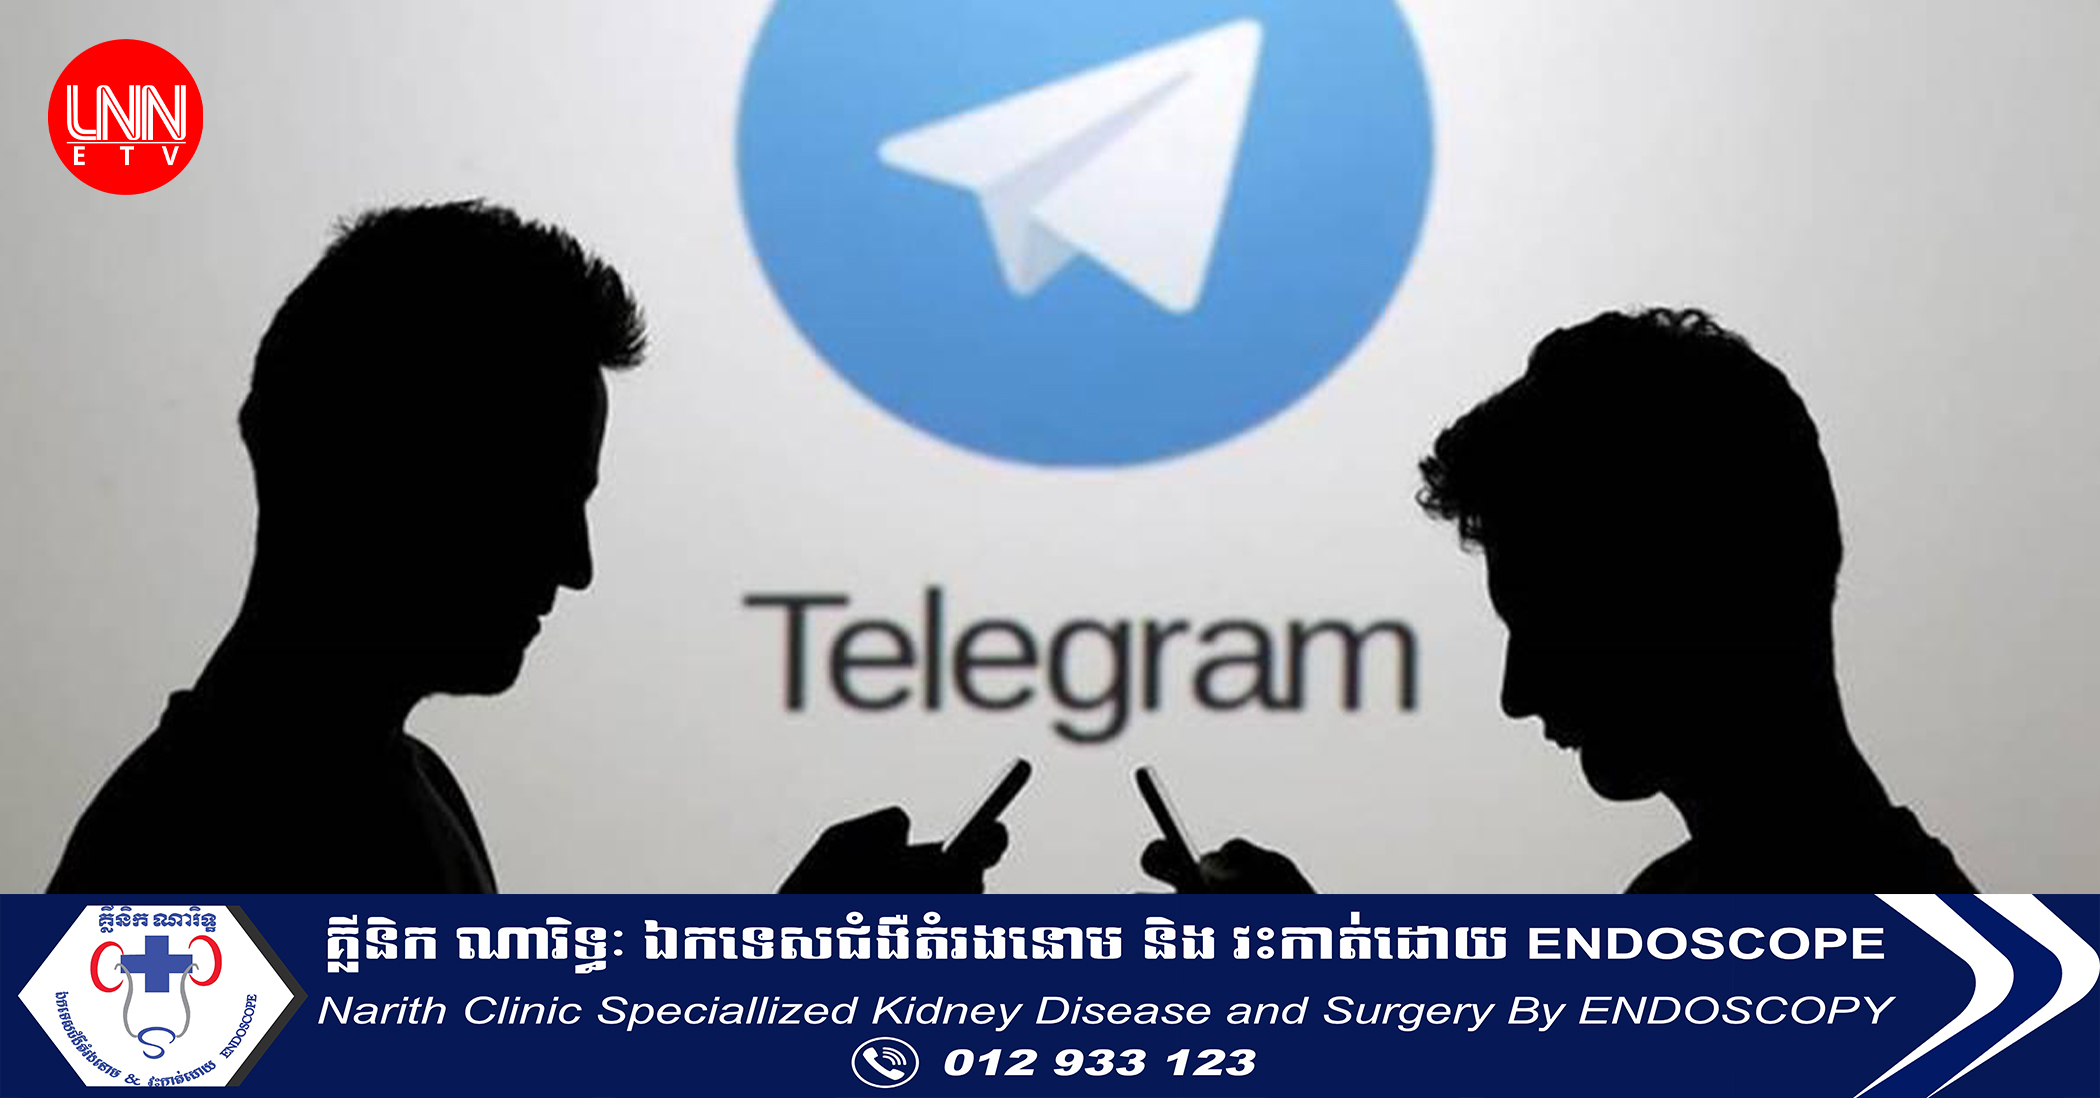 កម្មវិធី Telegram គ្រោងនឹងបន្ថែមមុខងារថ្មី អ្នកប្រើប្រាស់អាច Add Story ហើយពិសេស​ជាង Facebook ទៅទៀត